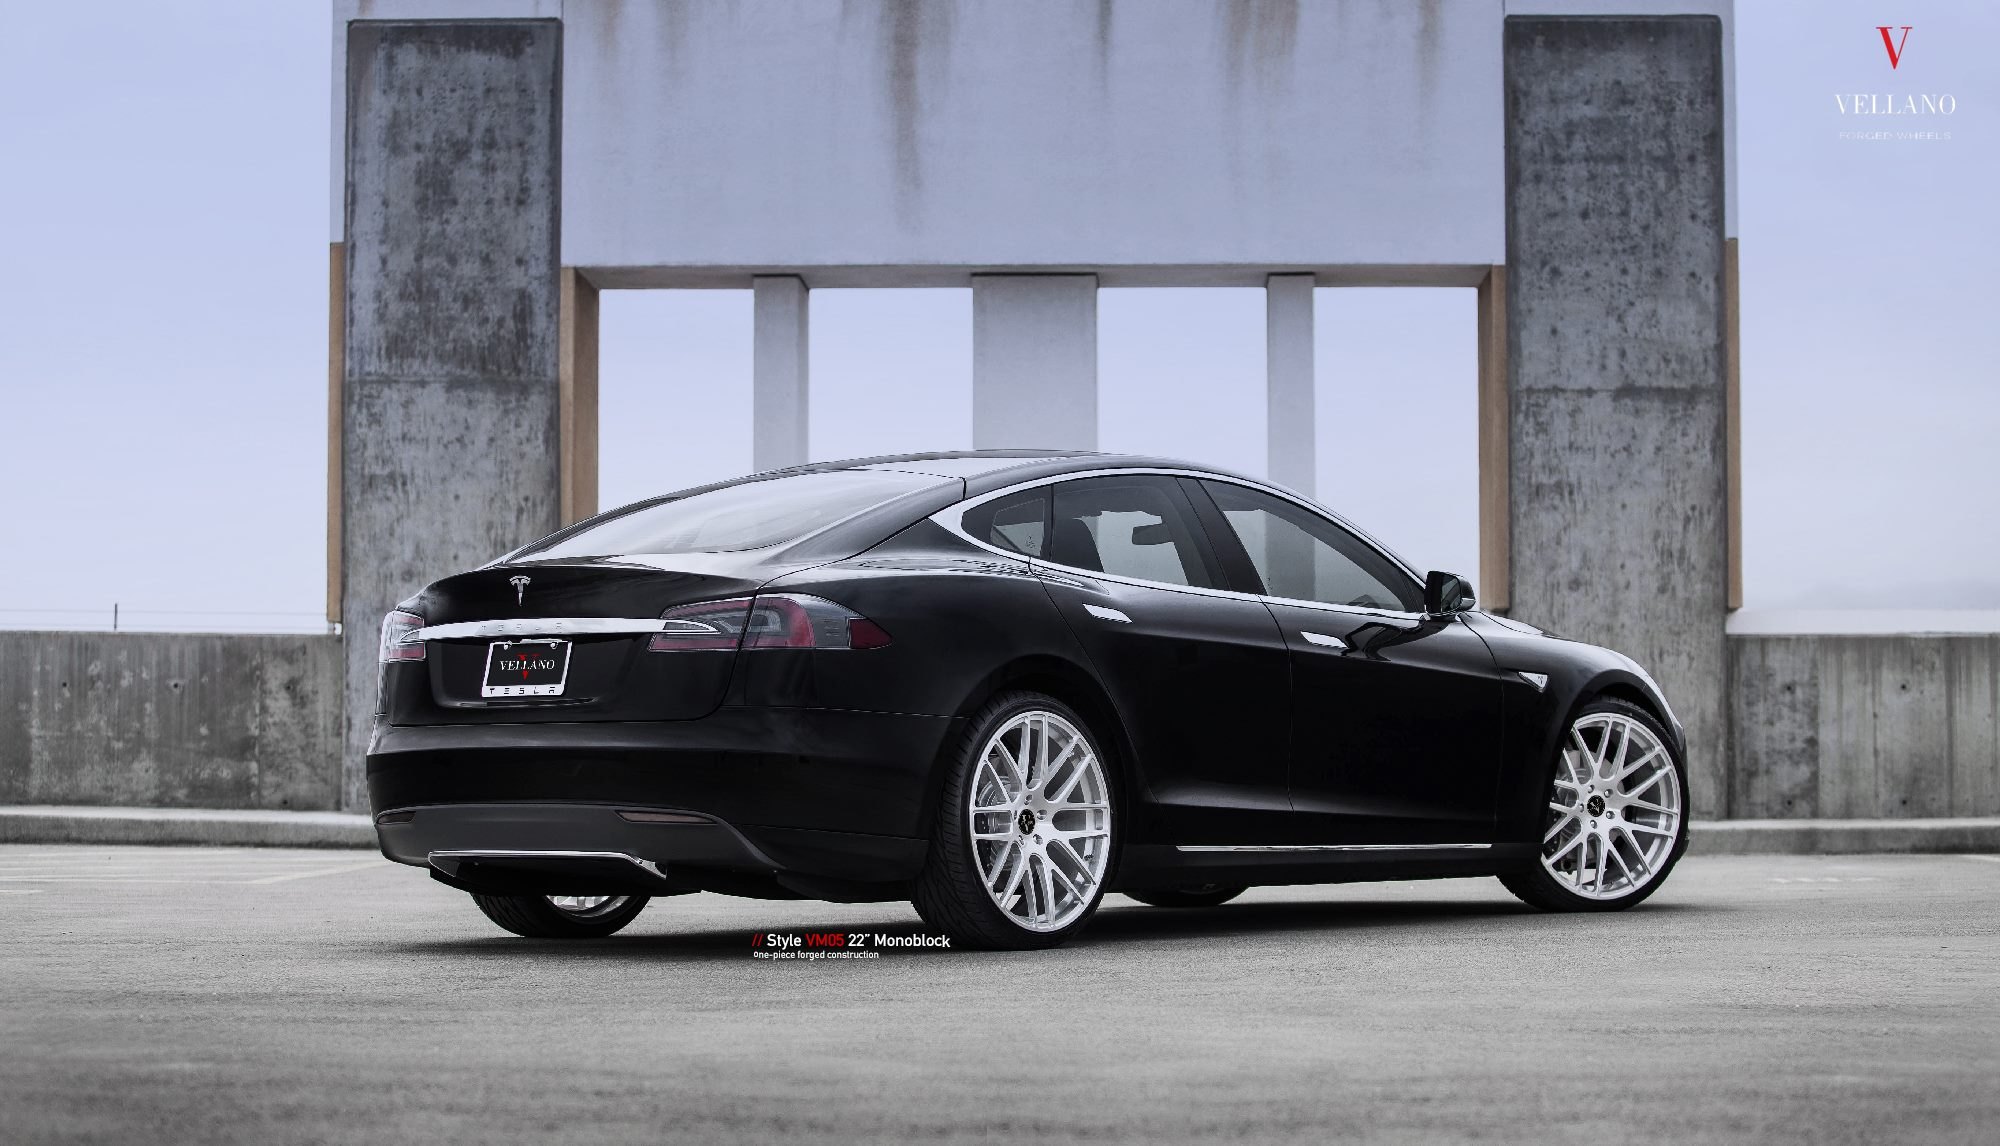 22 Inch Chrome Vellano Rims on Black Tesla Model S - Photo by Vellano